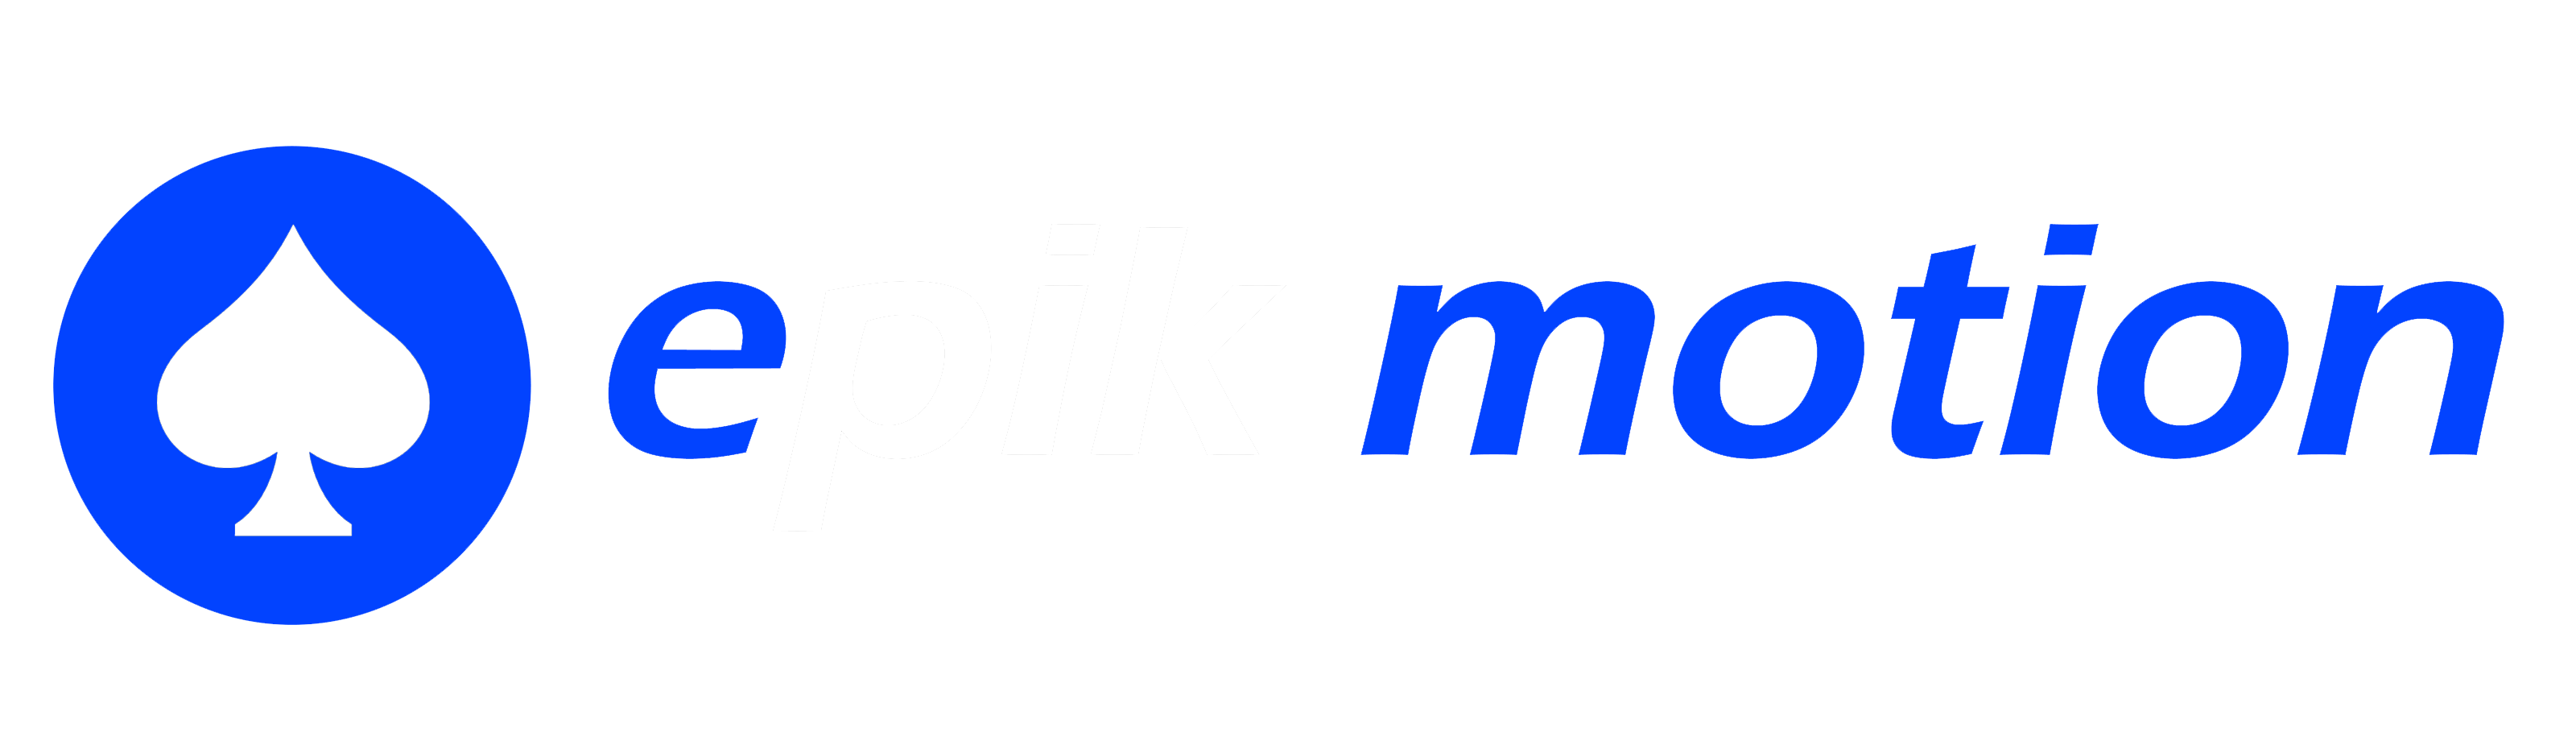 ePIK Motion